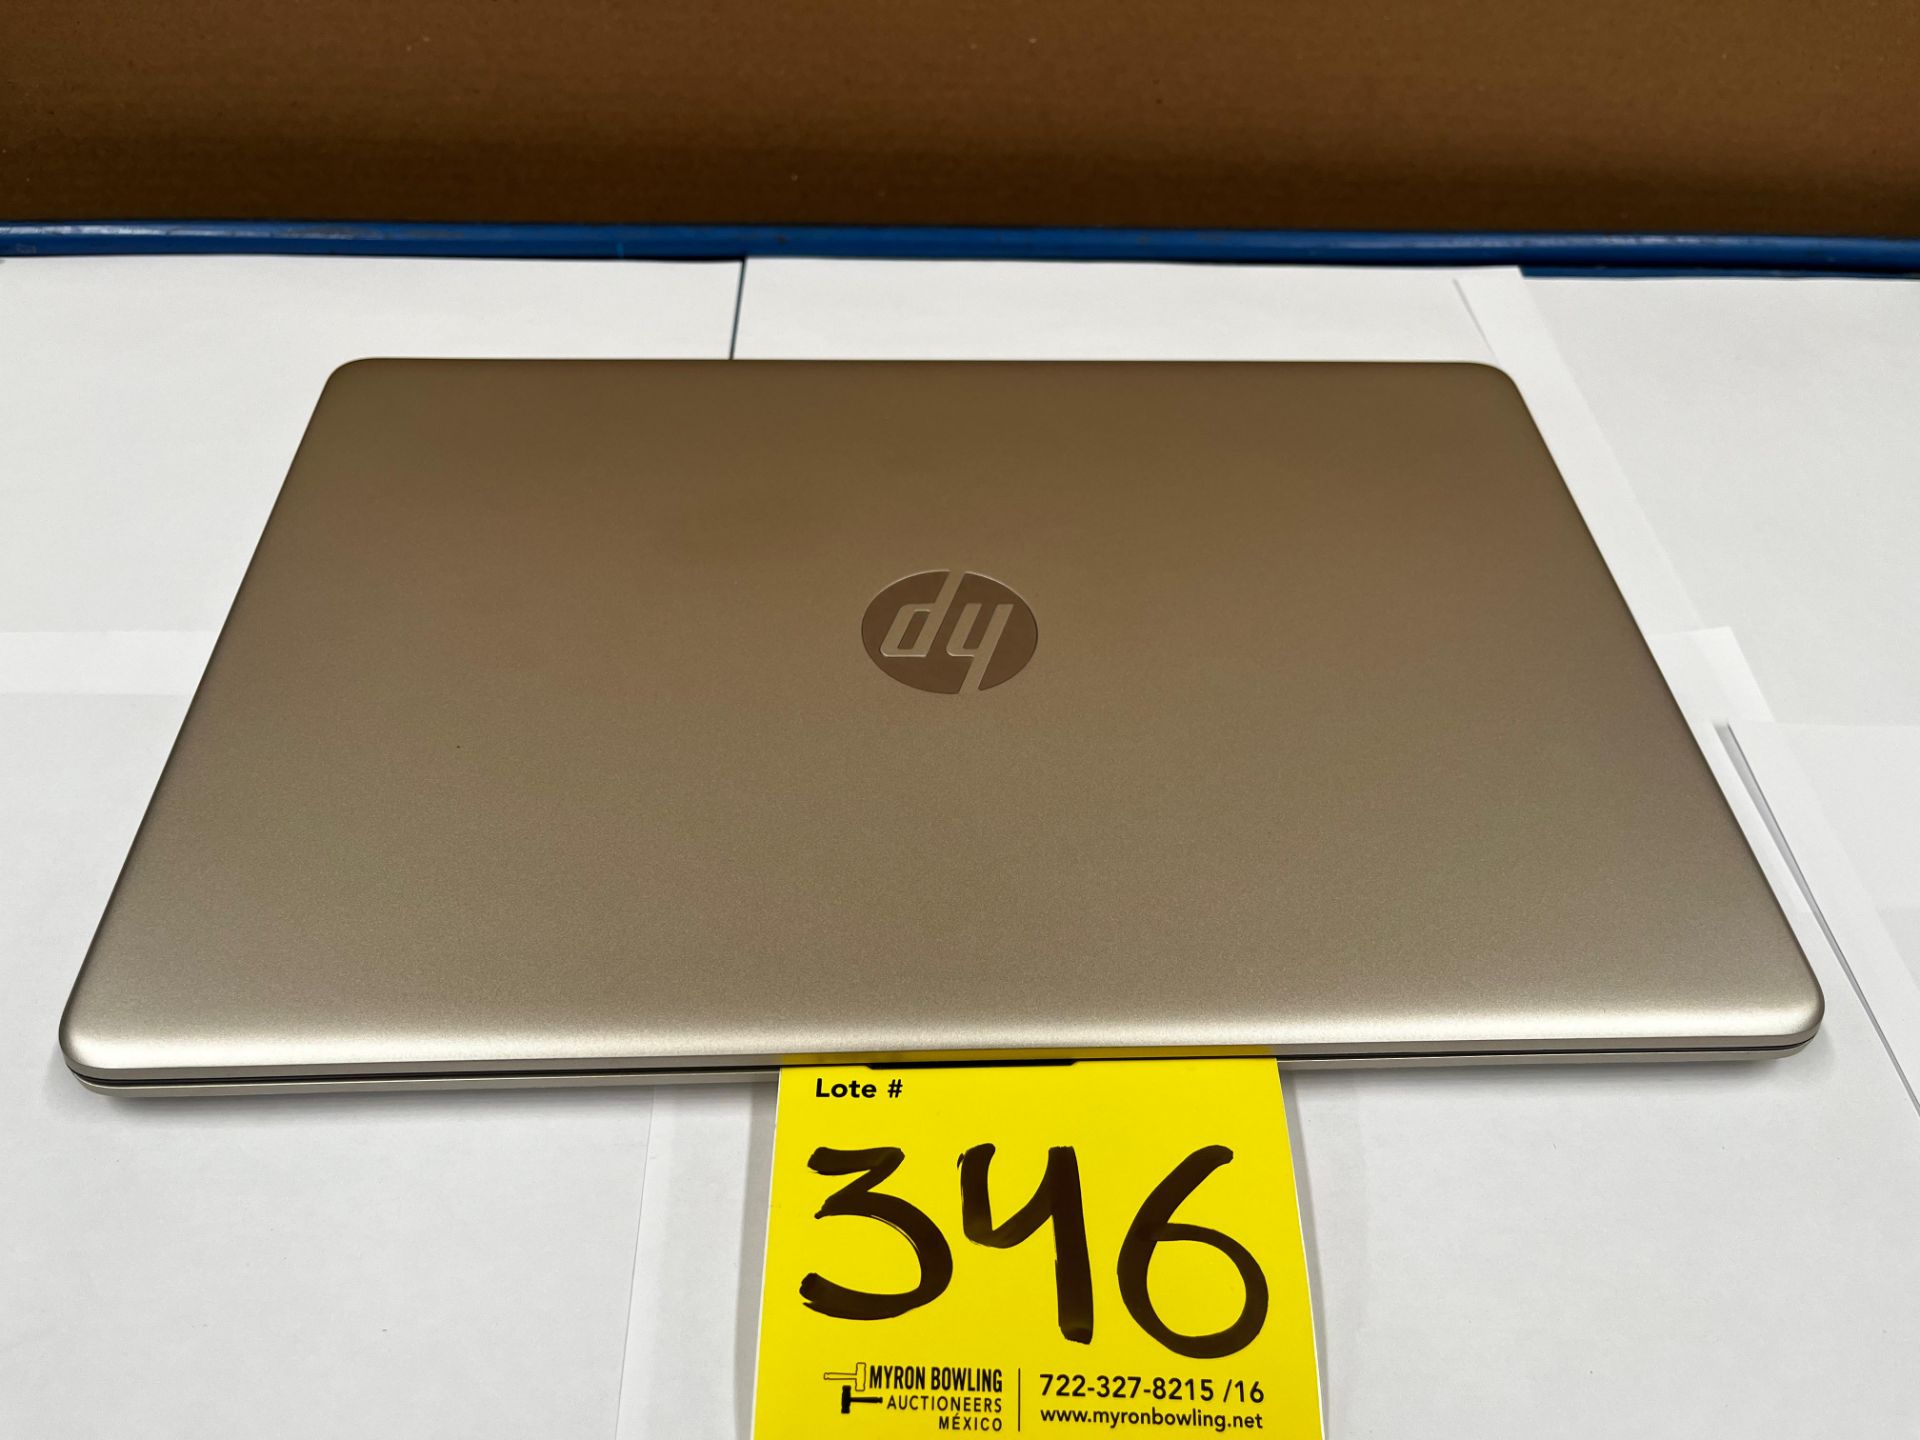 1 Laptop Marca HP, Modelo 15EF2505LA, Serie 5CD3519S94, Almacenamiento de 512 GB; RAM de 8 GB, Col - Image 4 of 6